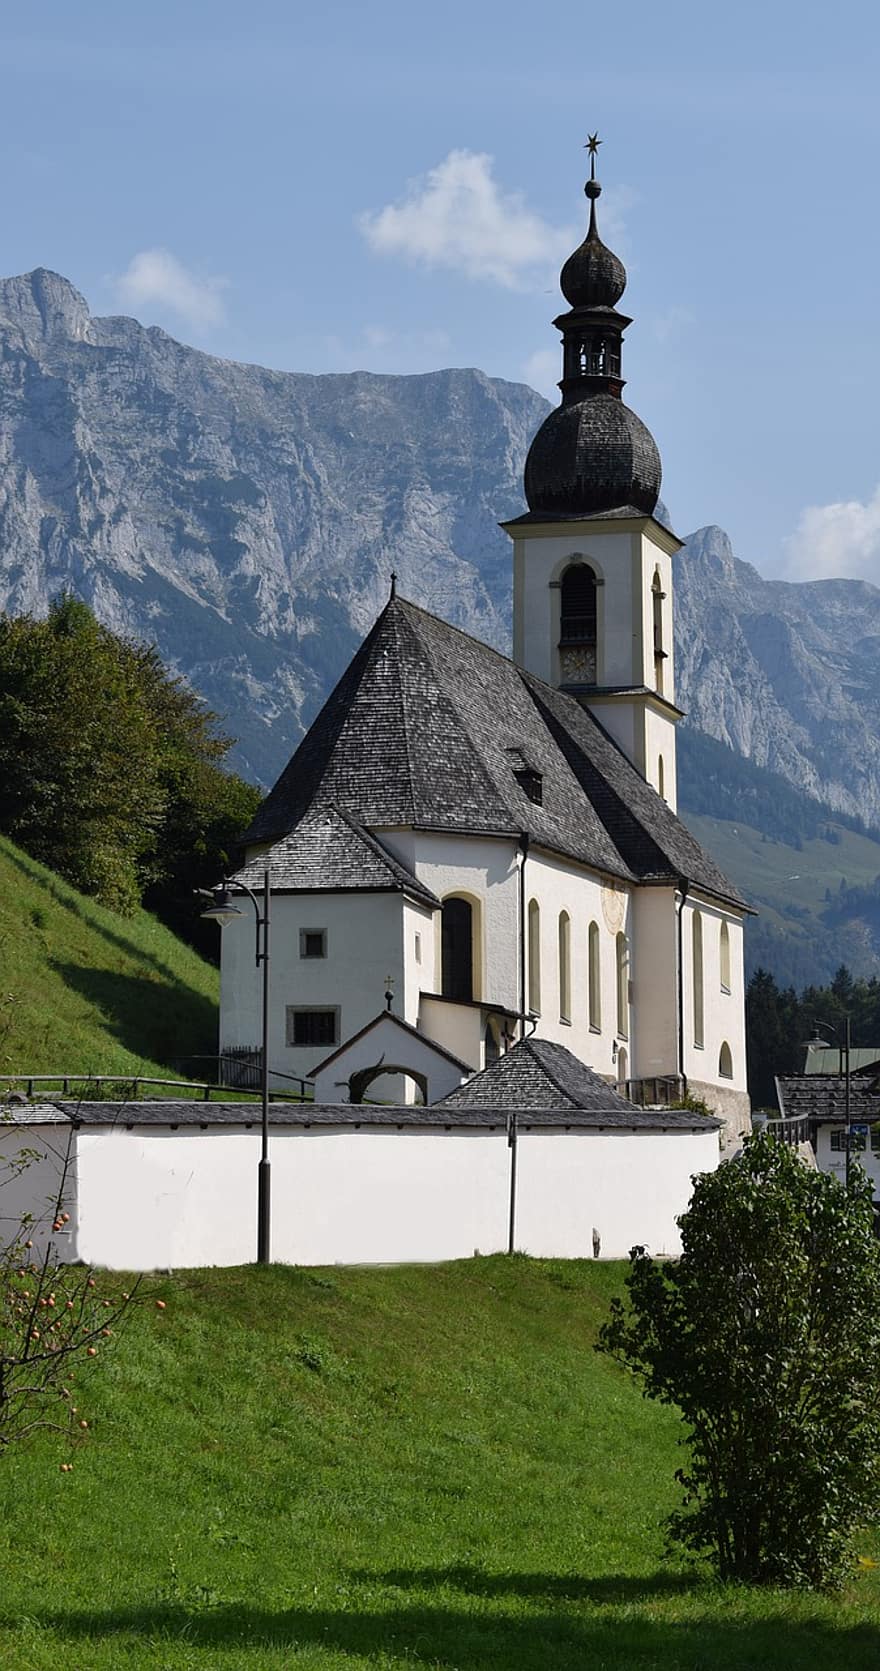 kościół, kaplica, architektura, budynek, dzwonnica, Struktura, fasada, Architekt sakralny, berchtesgaden, Niemcy, bawaria